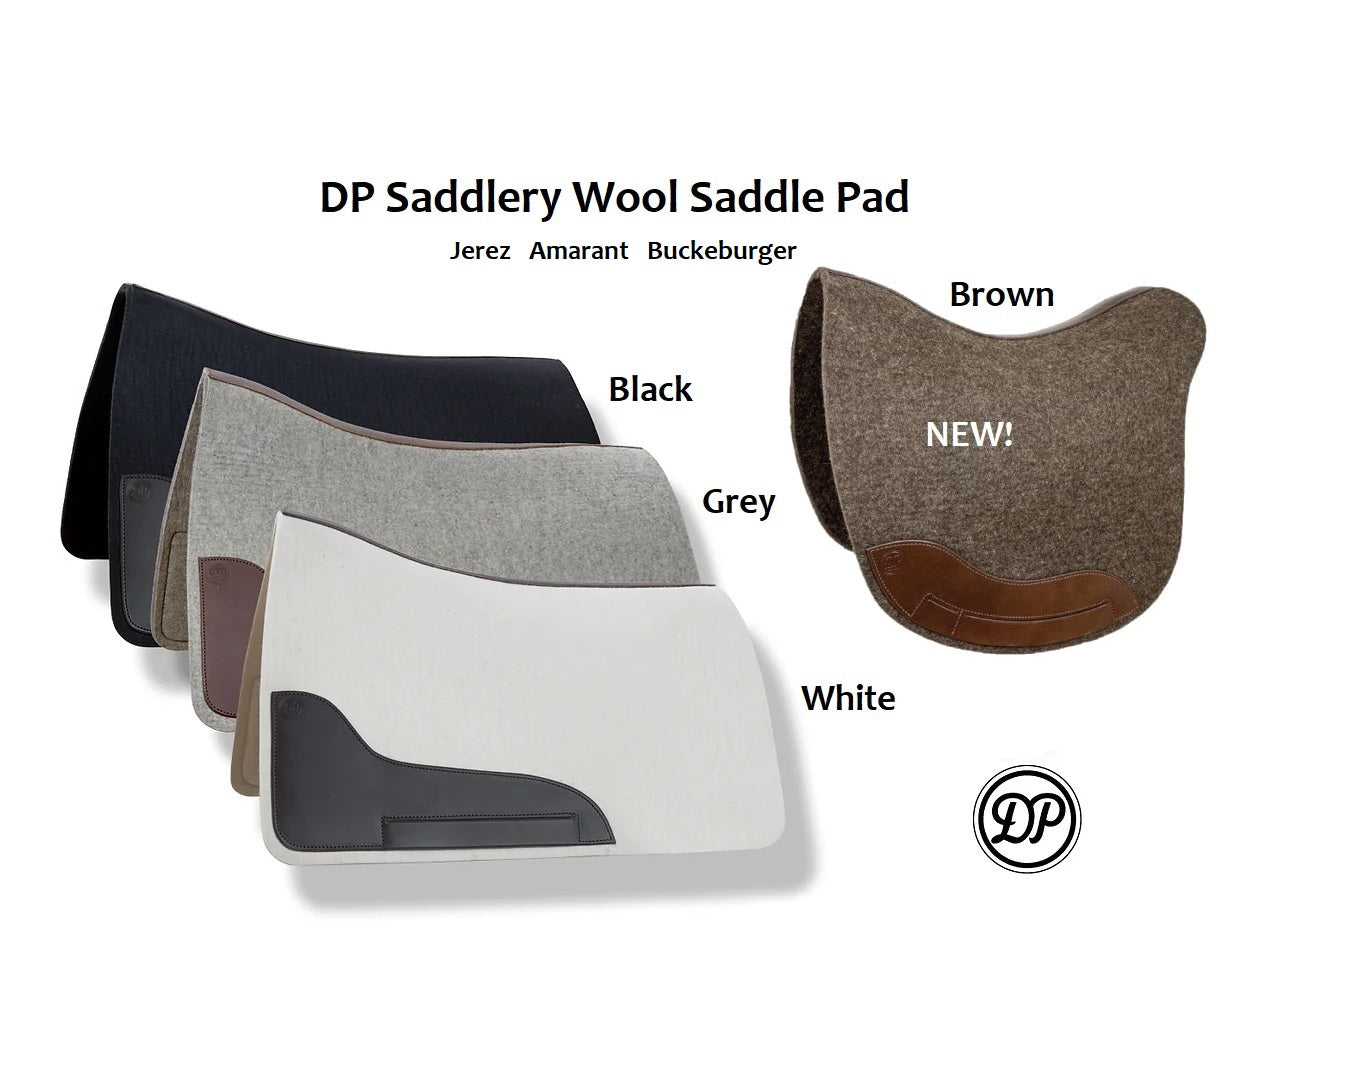 DP Saddlery Wool Felt Saddle Pad - Jerez